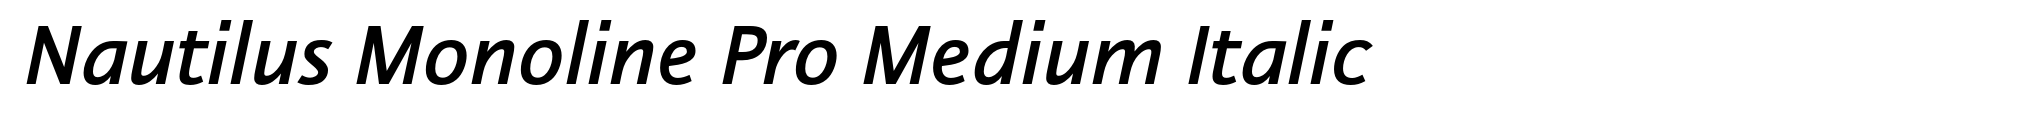 Nautilus Monoline Pro Medium Italic image